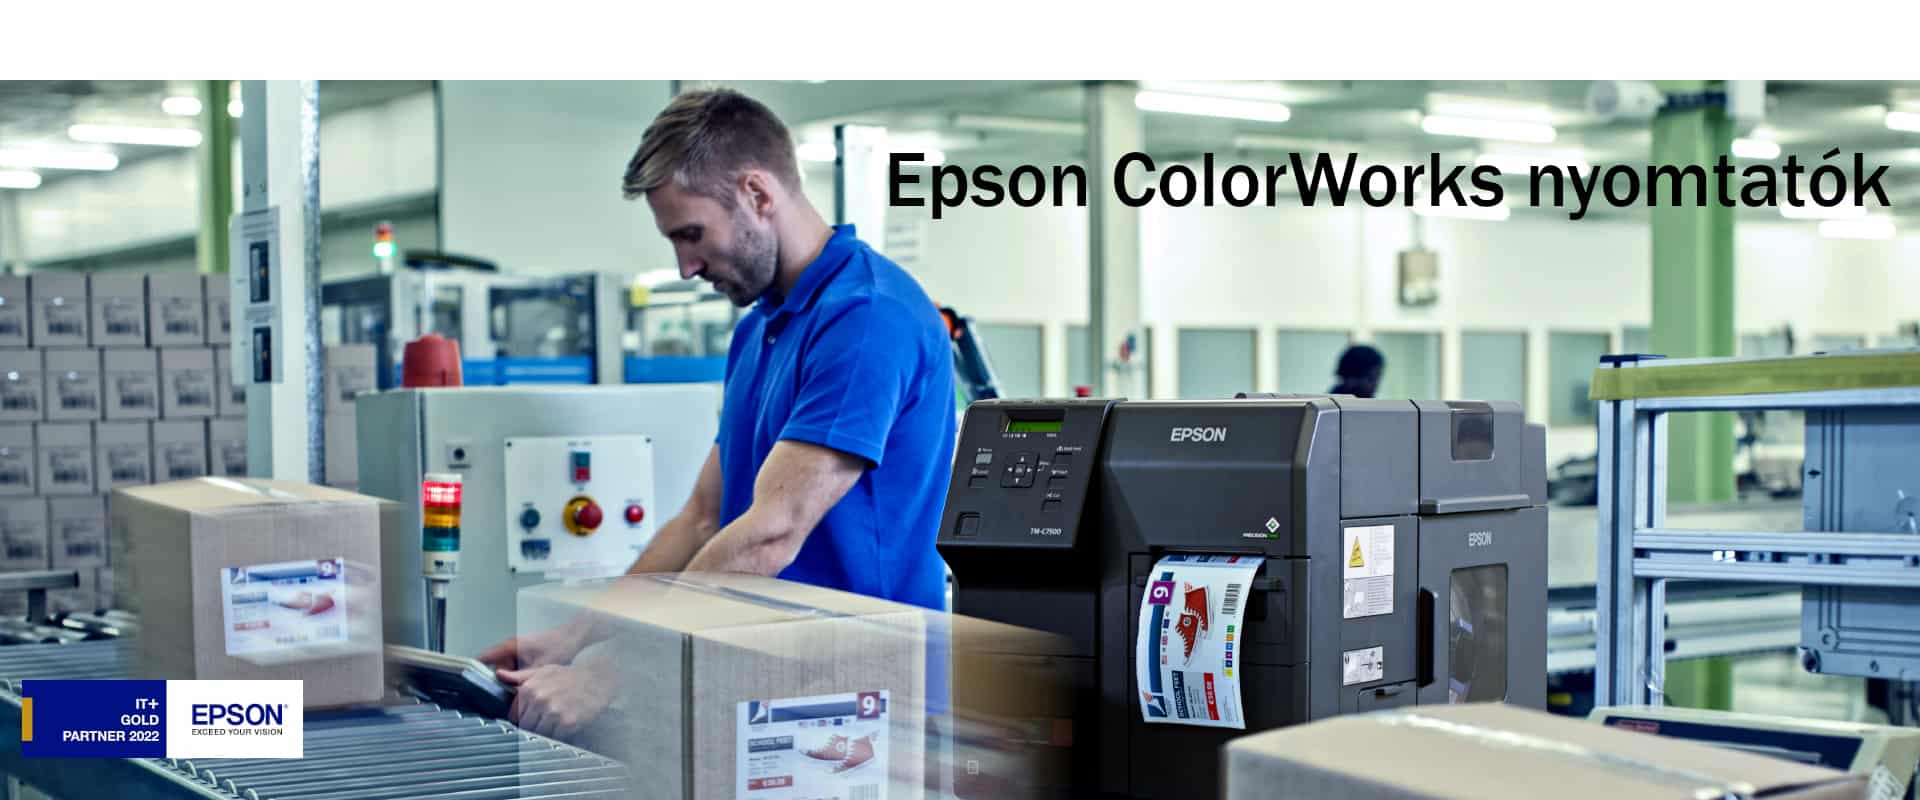 ColorWorks Epson nyomtató címkenyomtató